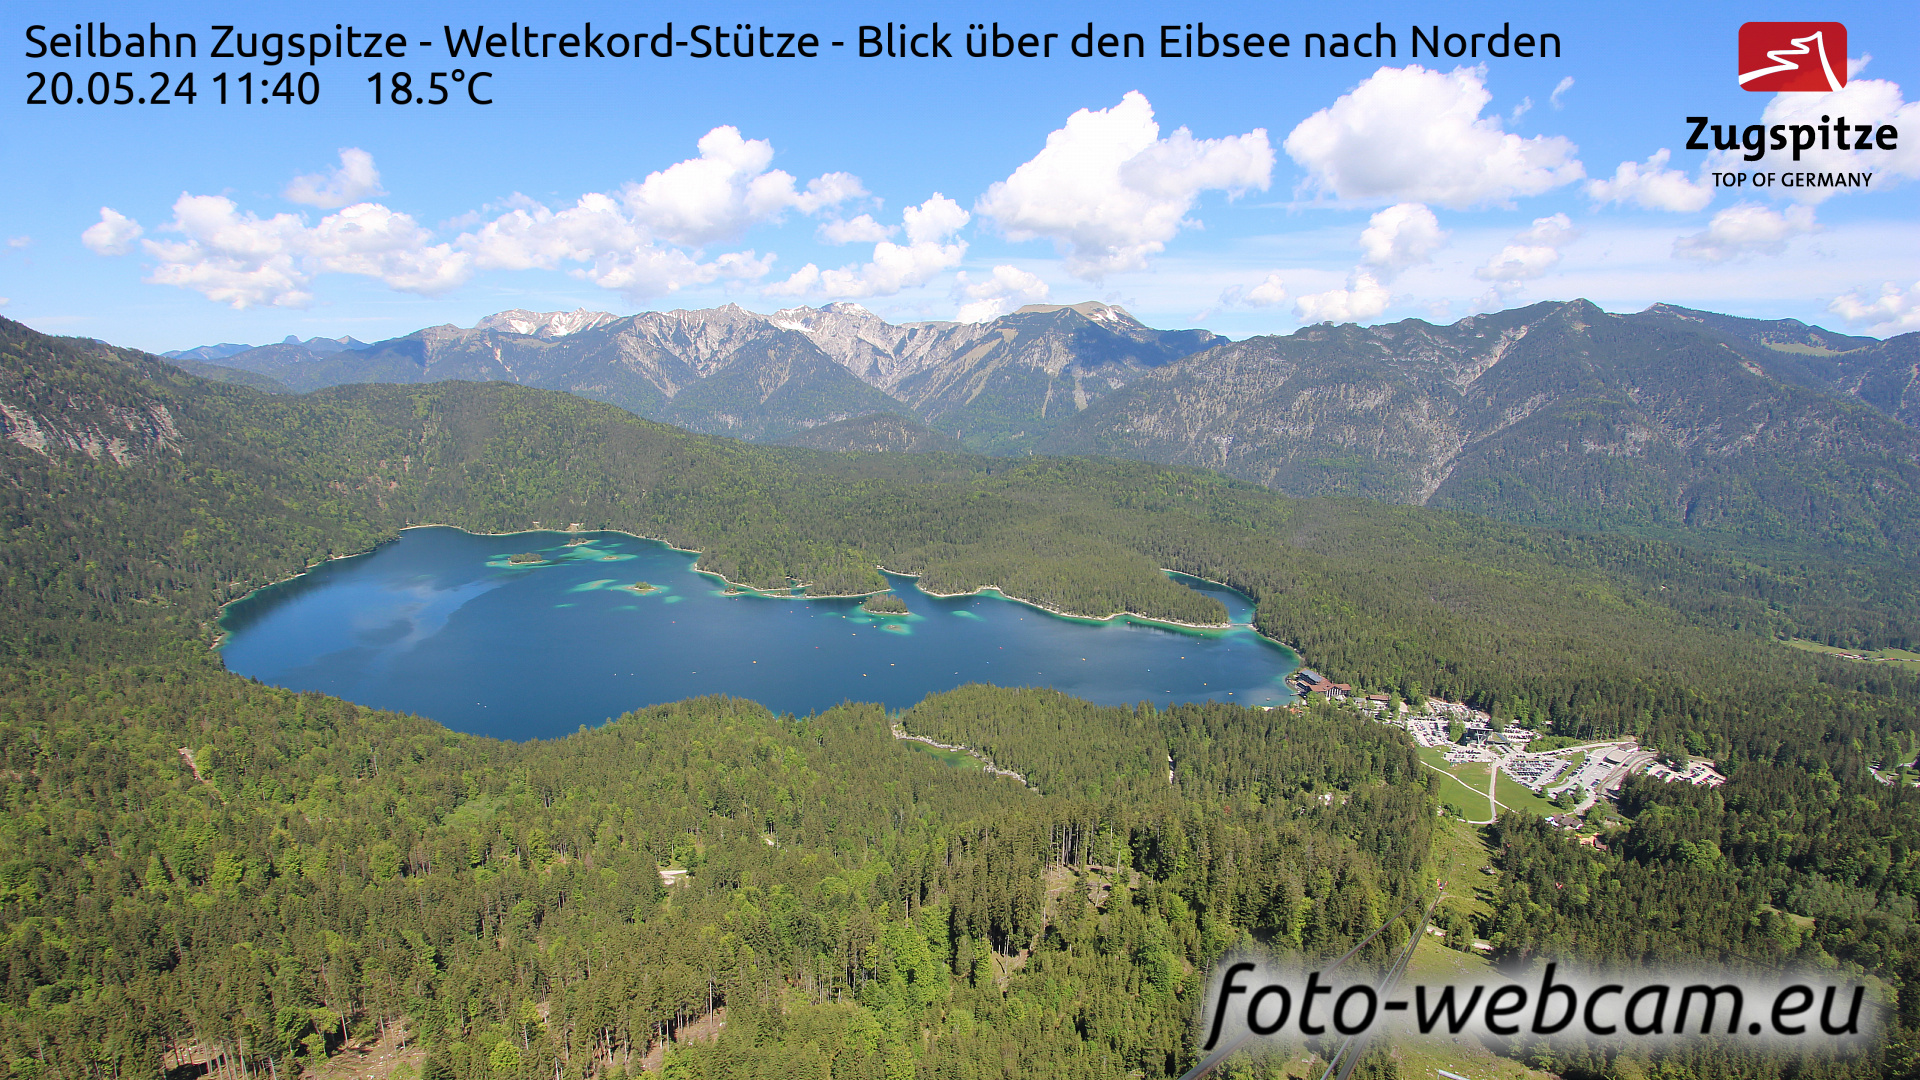 Zugspitze So. 11:49